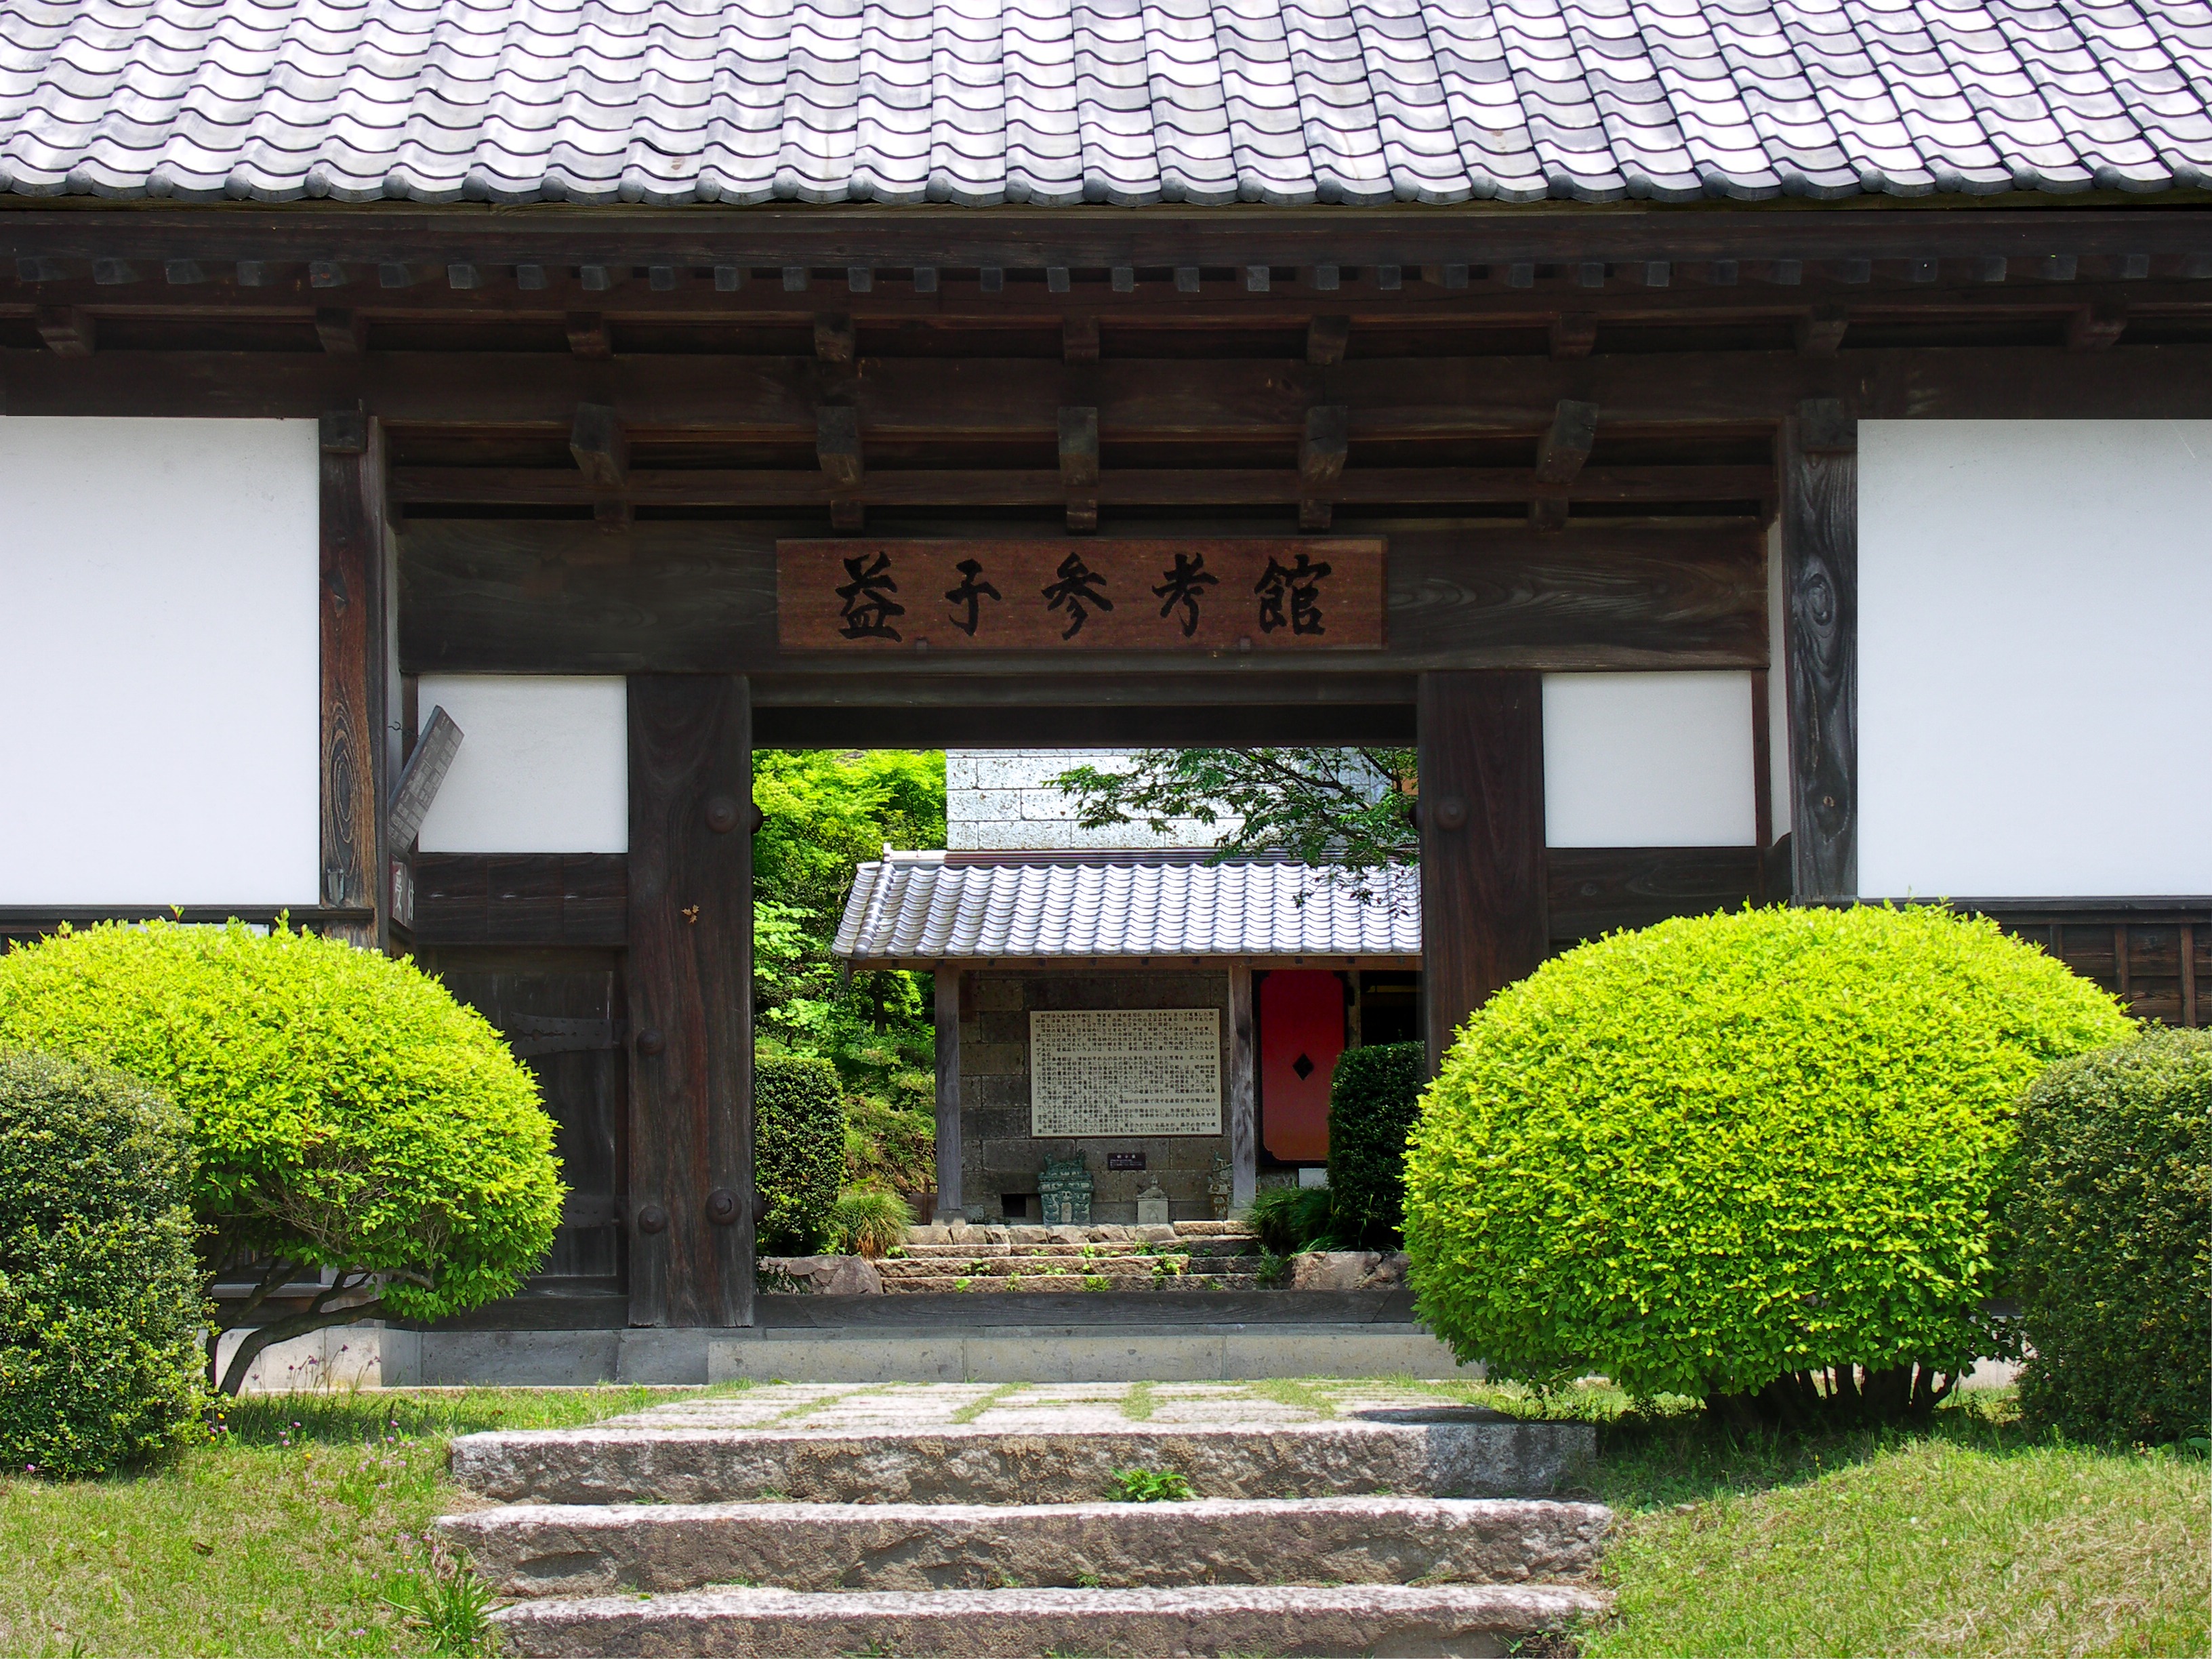 Mashiko Sankokan Museum